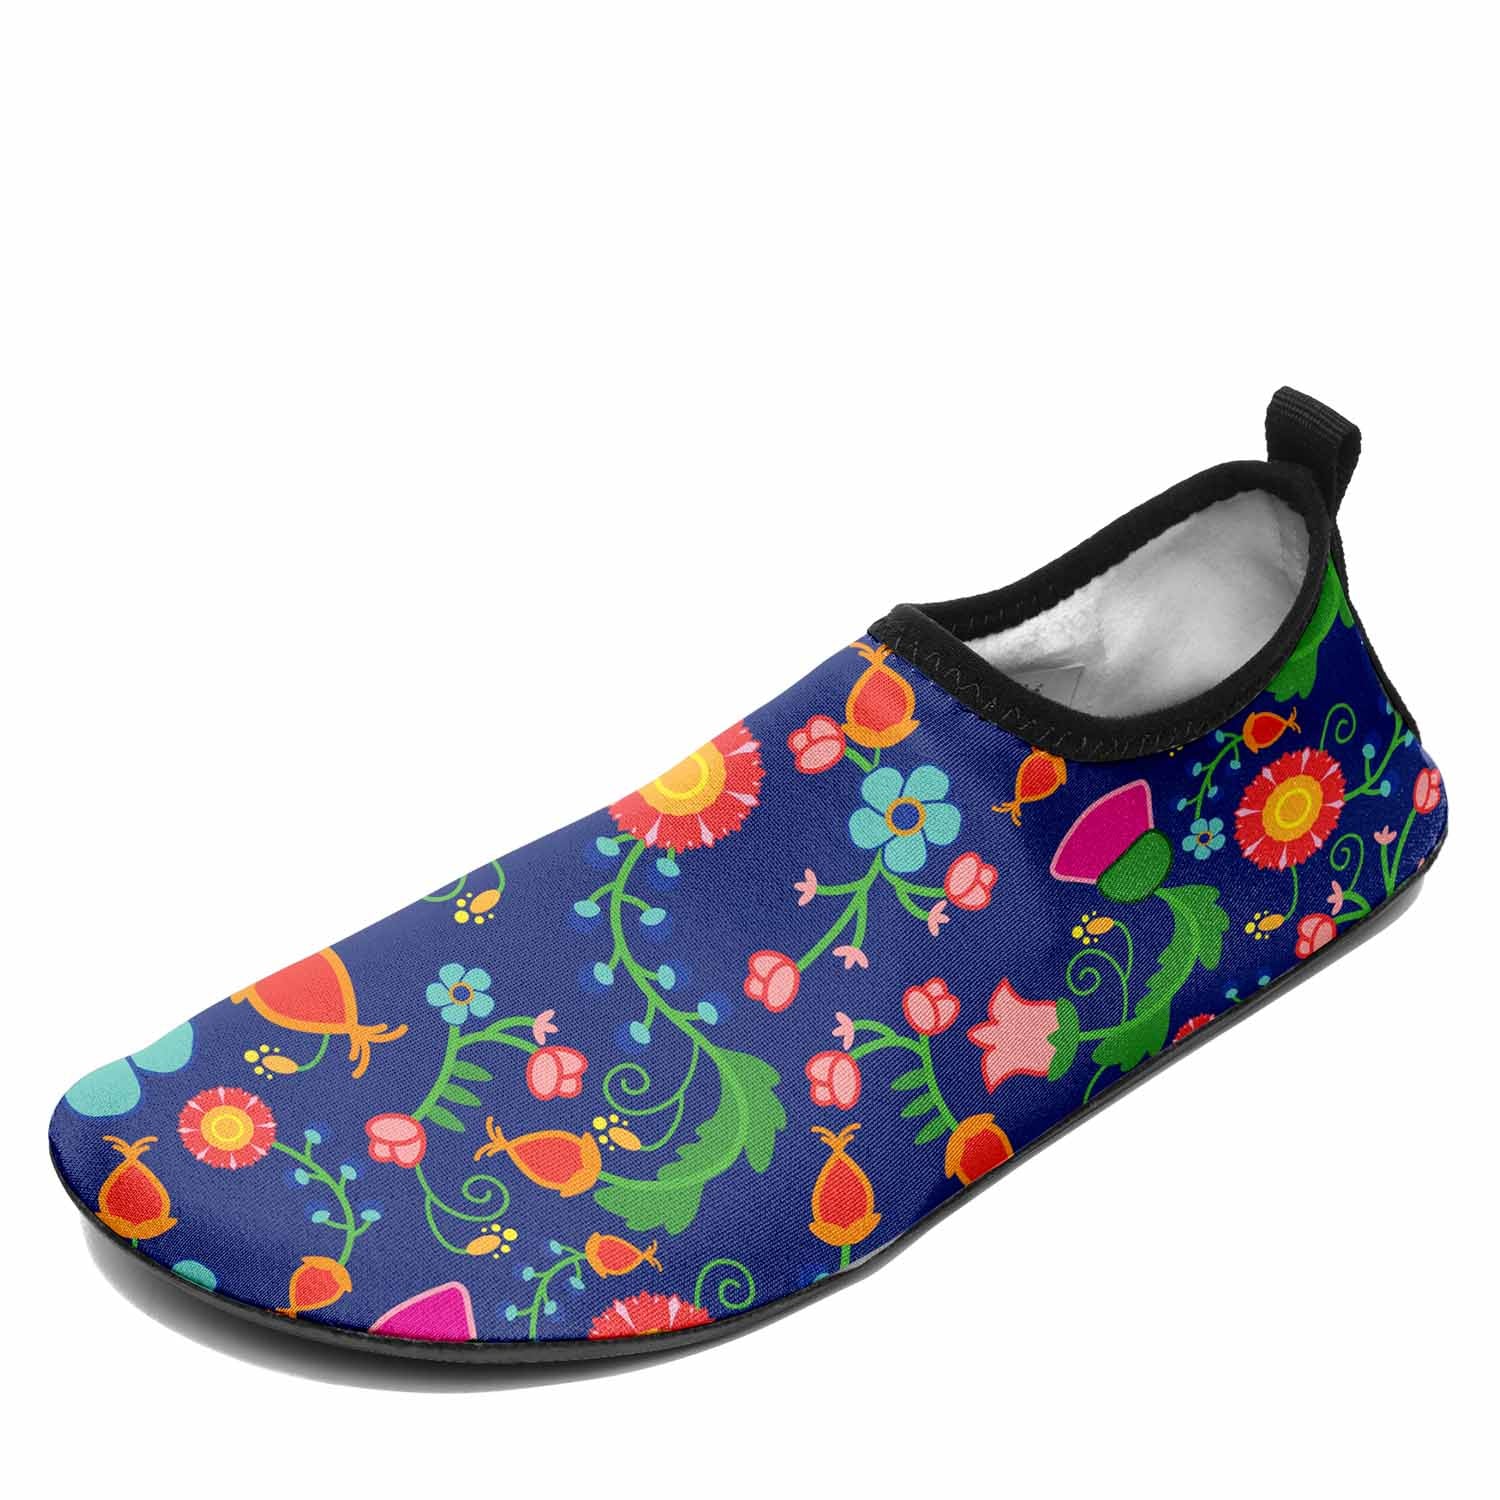 Bee Spring Twilight Kid's Sockamoccs Slip On Shoes